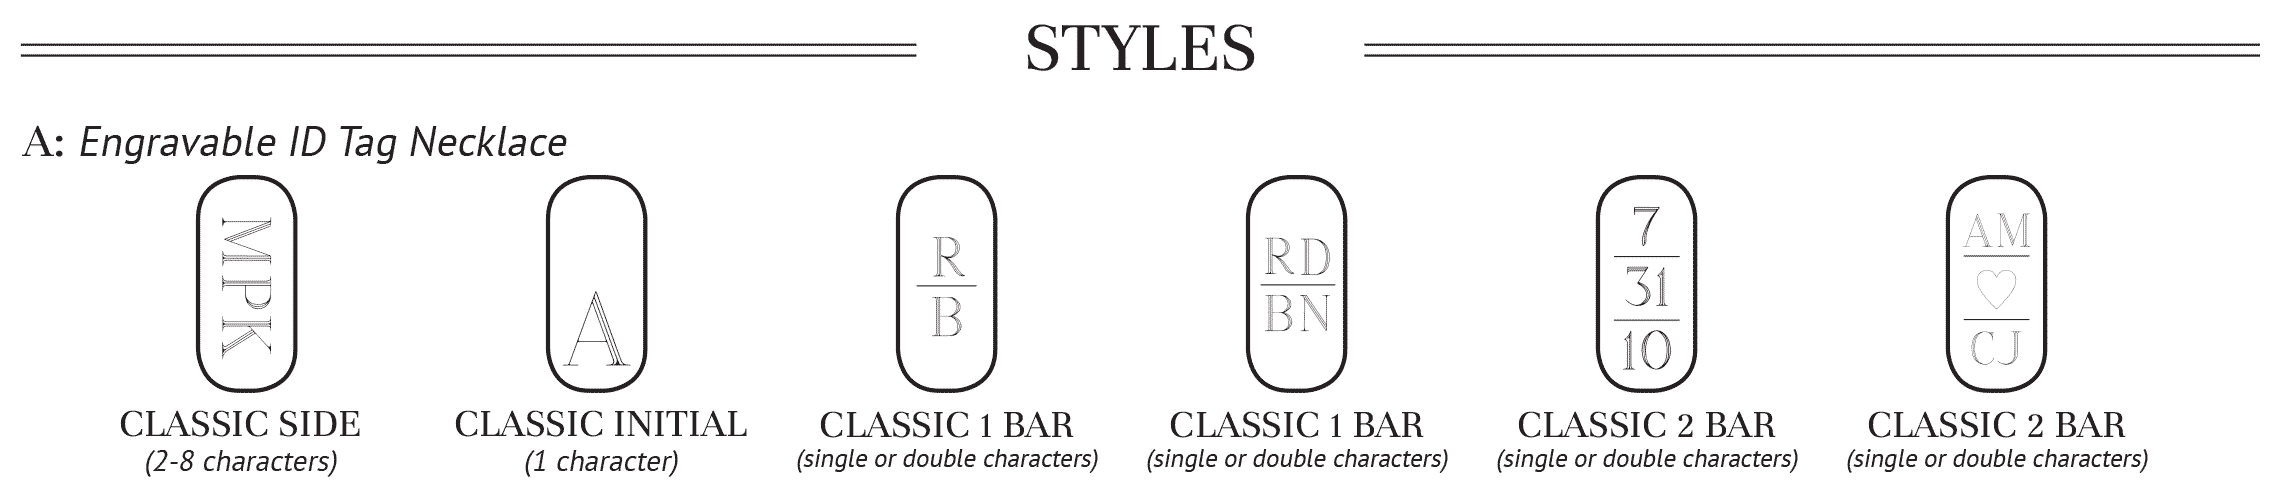 Styles for SS-EN-001